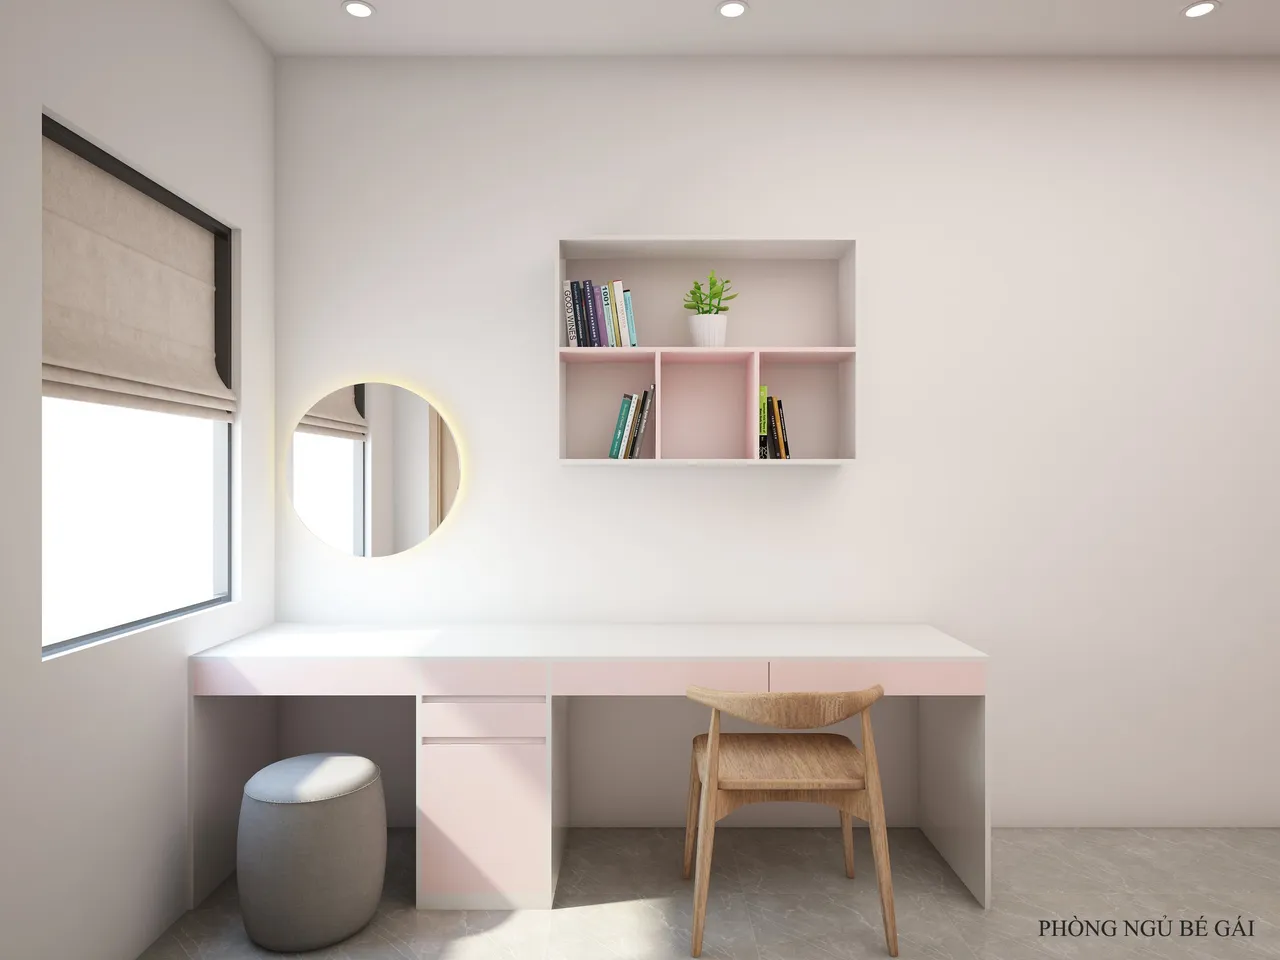 Concept nội thất phòng ngủ bé gái Nhà phố Quận 12 phong cách Tối giản Minimalist